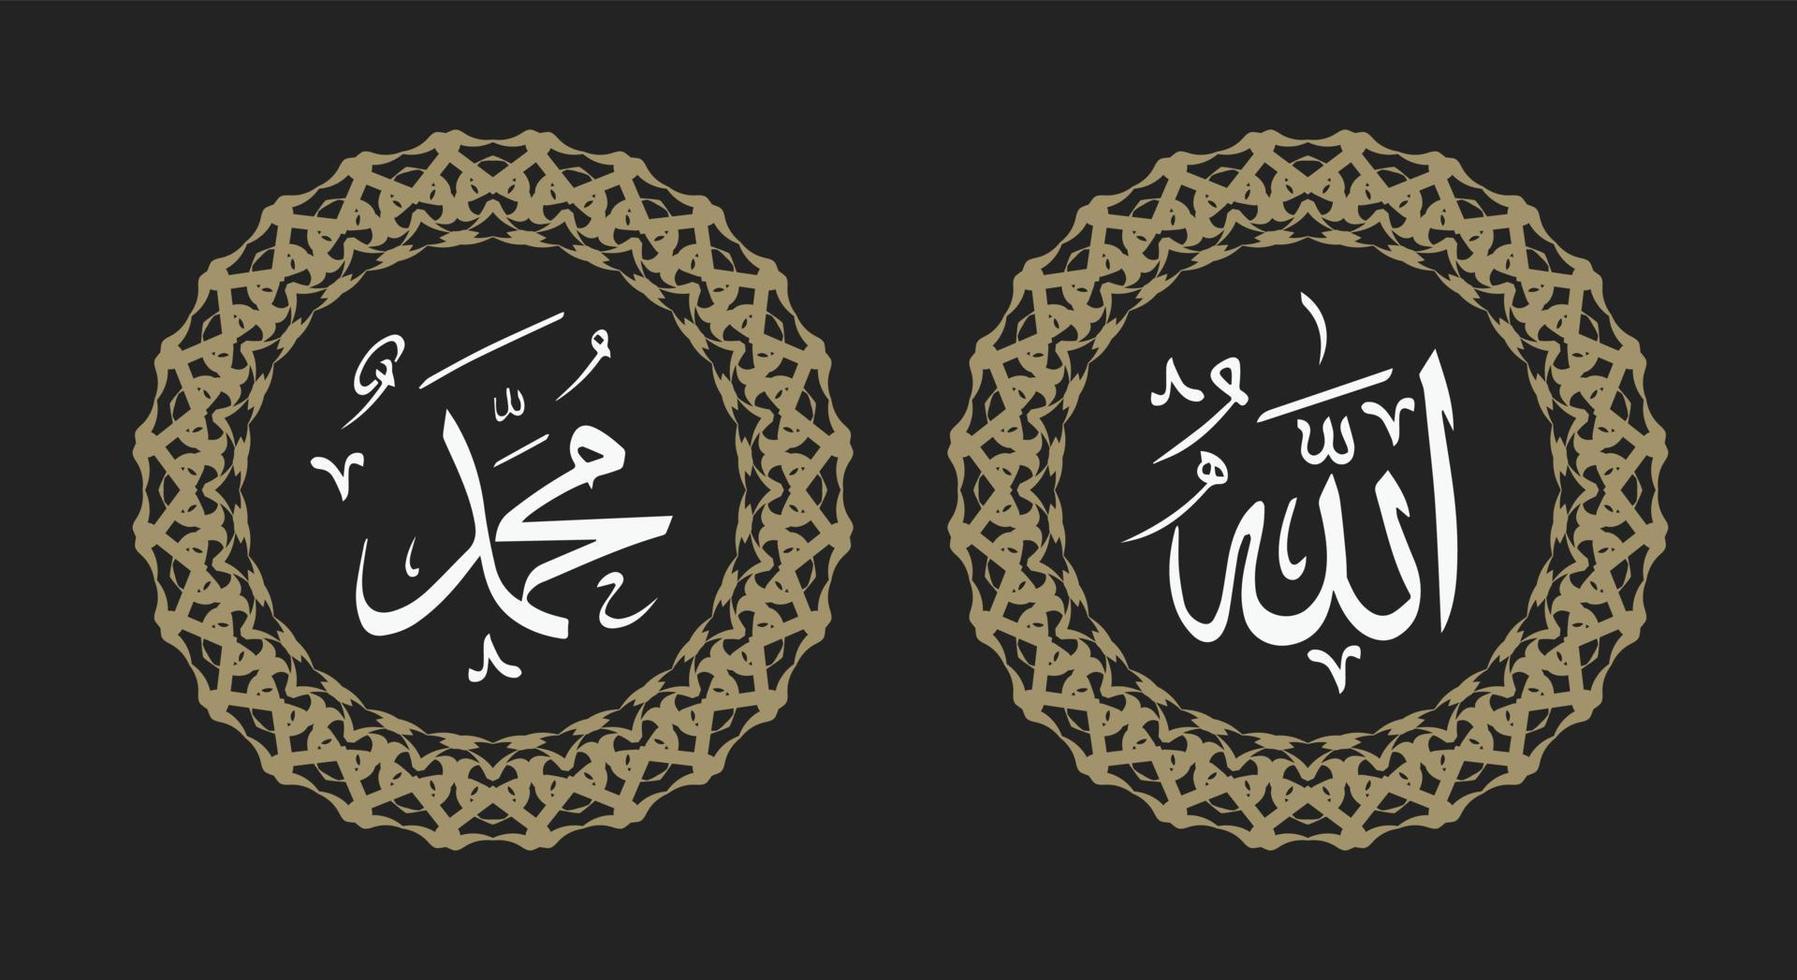 allah muhammad nombre de allah muhammad, arte de caligrafía islámica árabe de allah muhammad, con marco de círculo y color retro vector